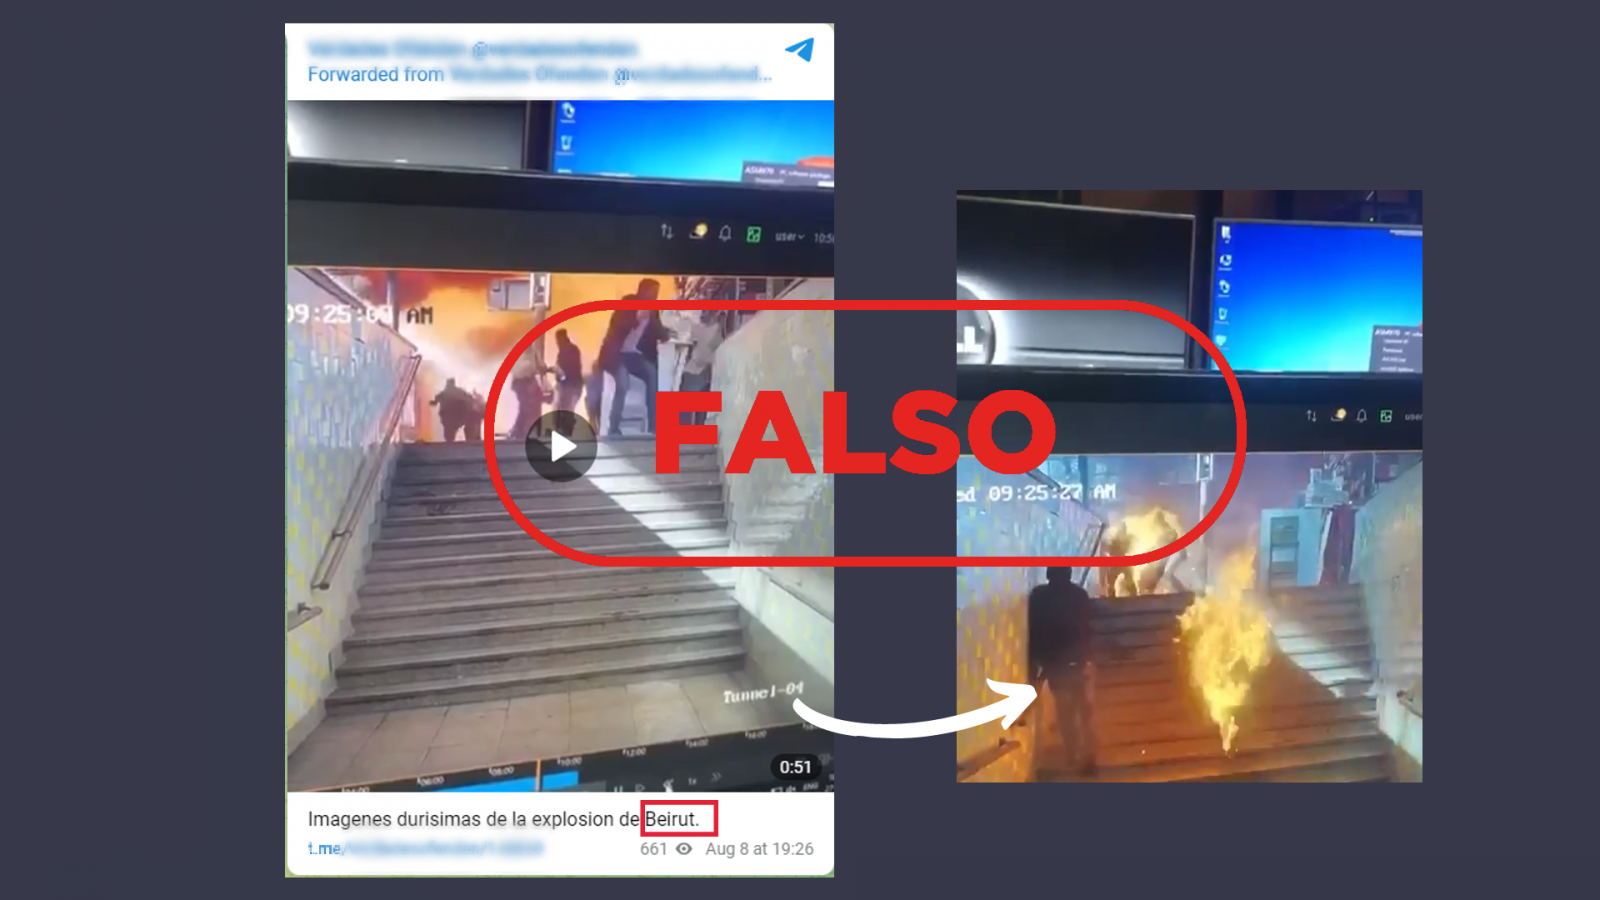 Mensaje de Telegram que muestra el mensaje falso sobre una explosión en Beirut (Líbano), con el sello 'Falso' en rojo